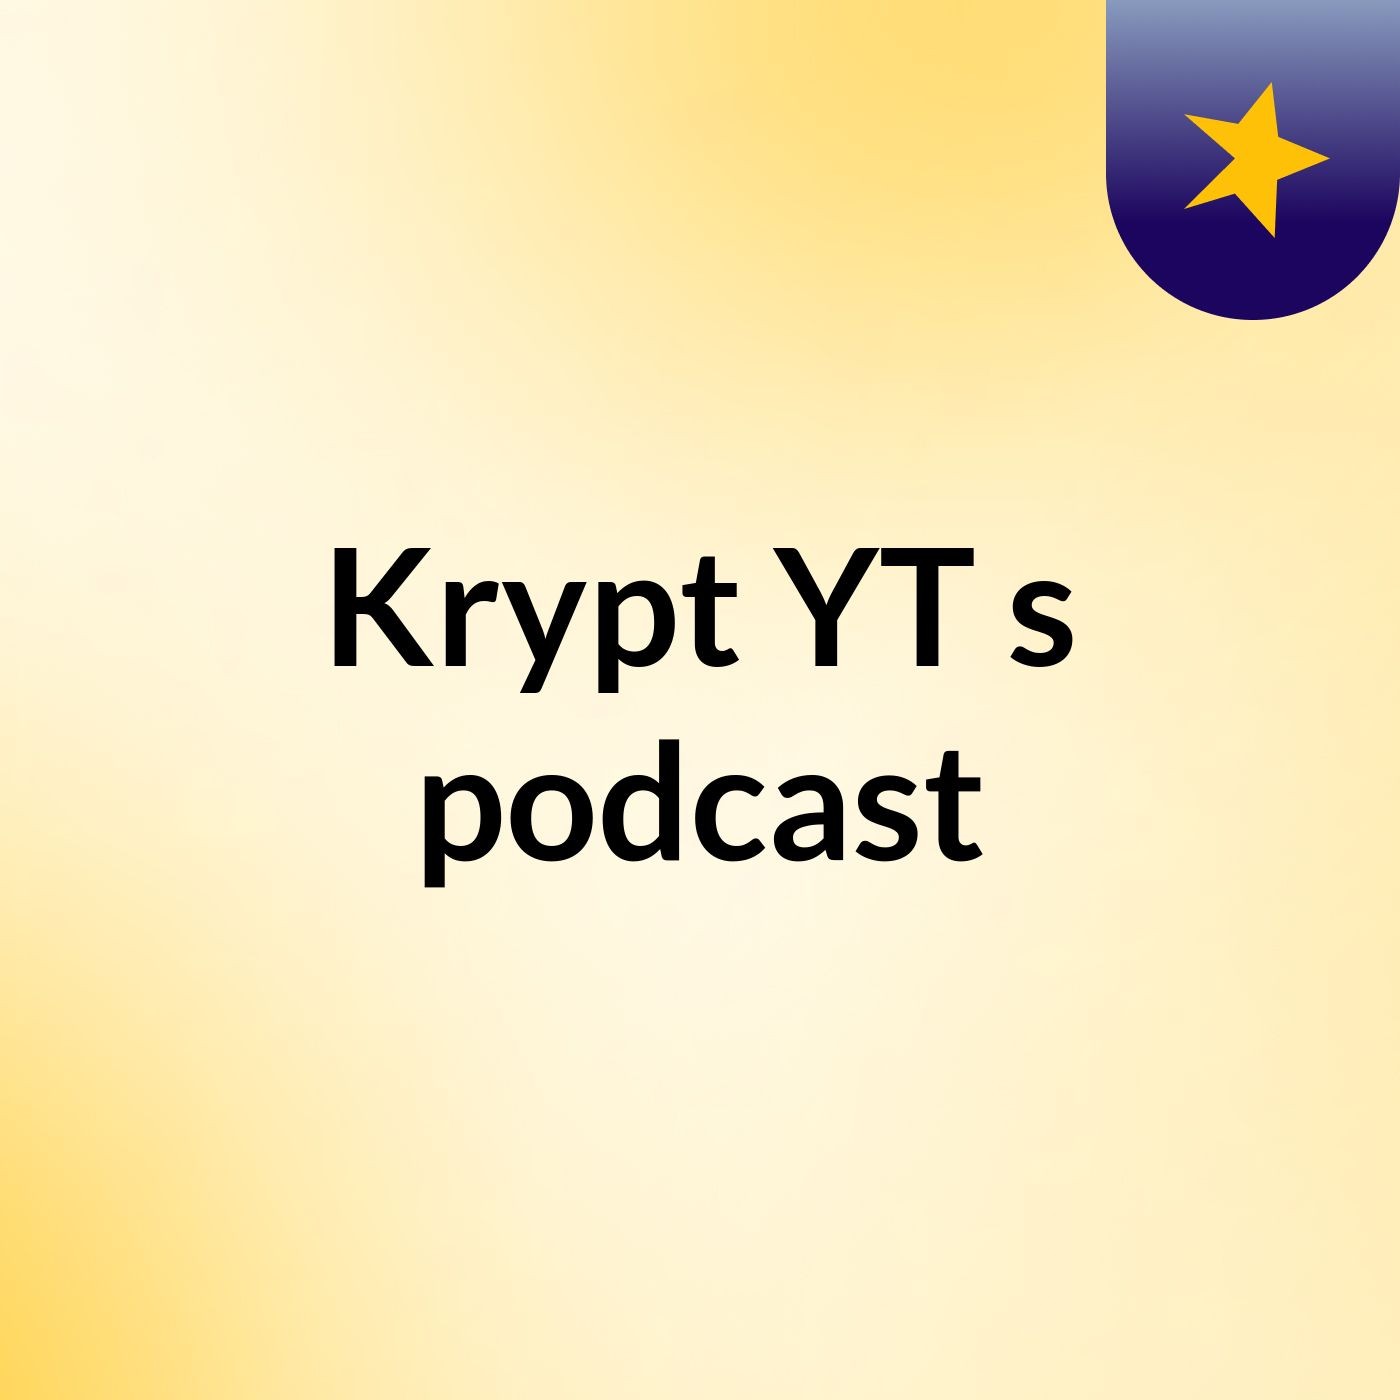 Krypt YT's podcast